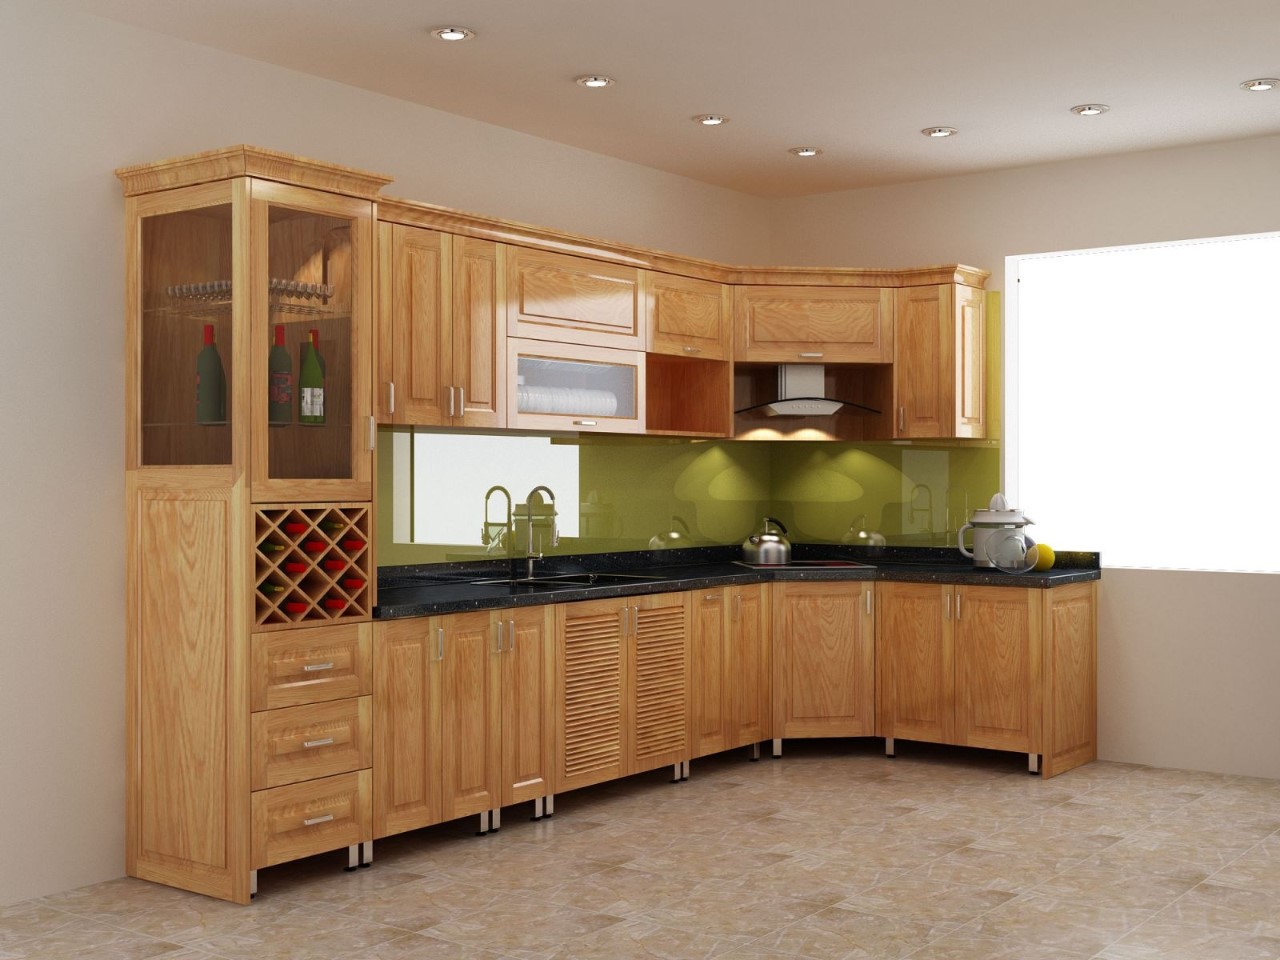 Mẫu tủ bếp góc xéo là lựa chọn hoàn hảo cho những không gian bếp bị góc vát